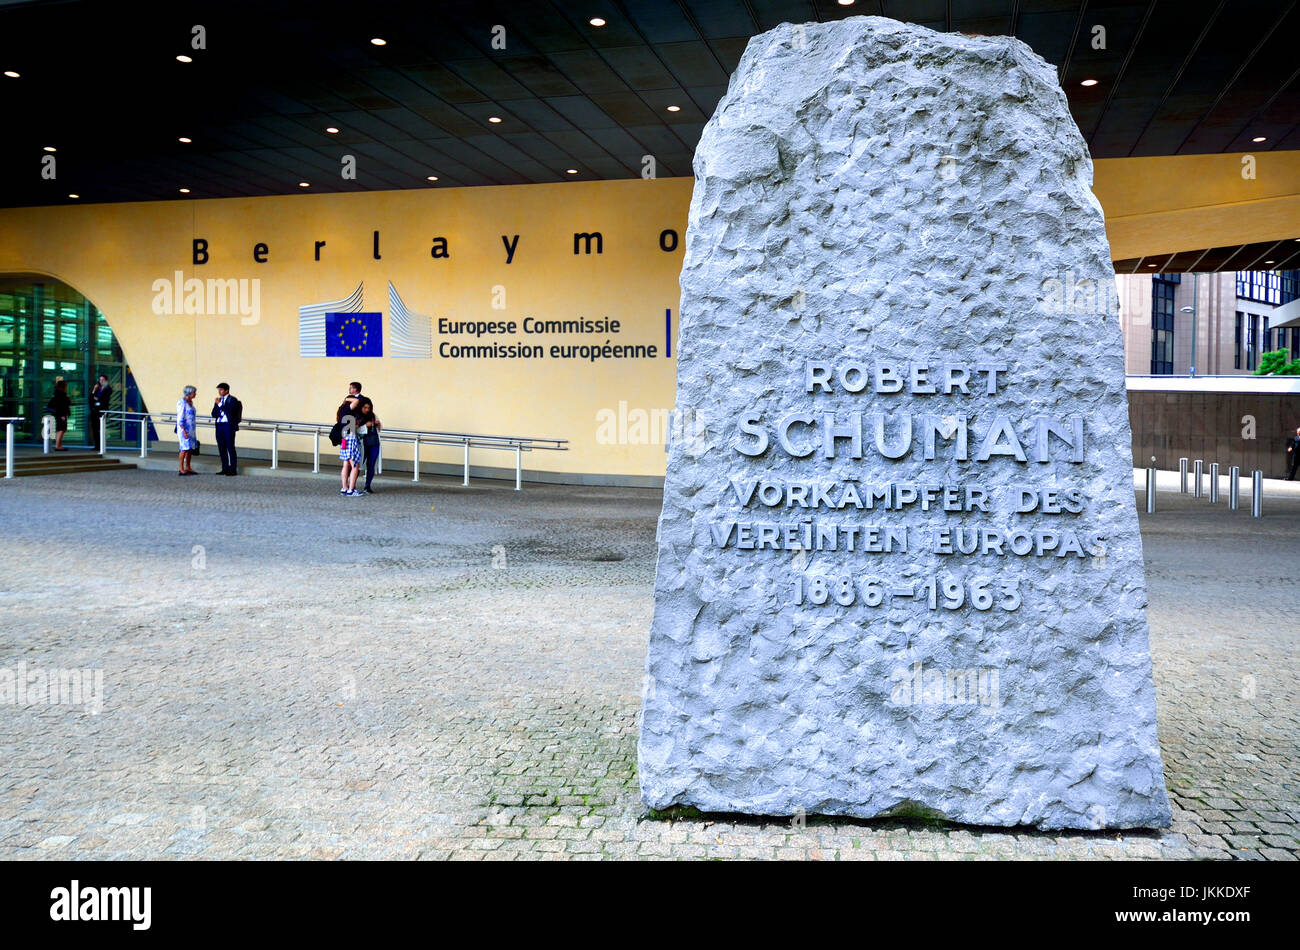 Bruselas, Bélgica. Edificio Berlaymont de la Comisión Europea. Monumento a Robert Schuman "Robert Schuman" Promotor de la Europa unificada 1886-1963' ... Foto de stock